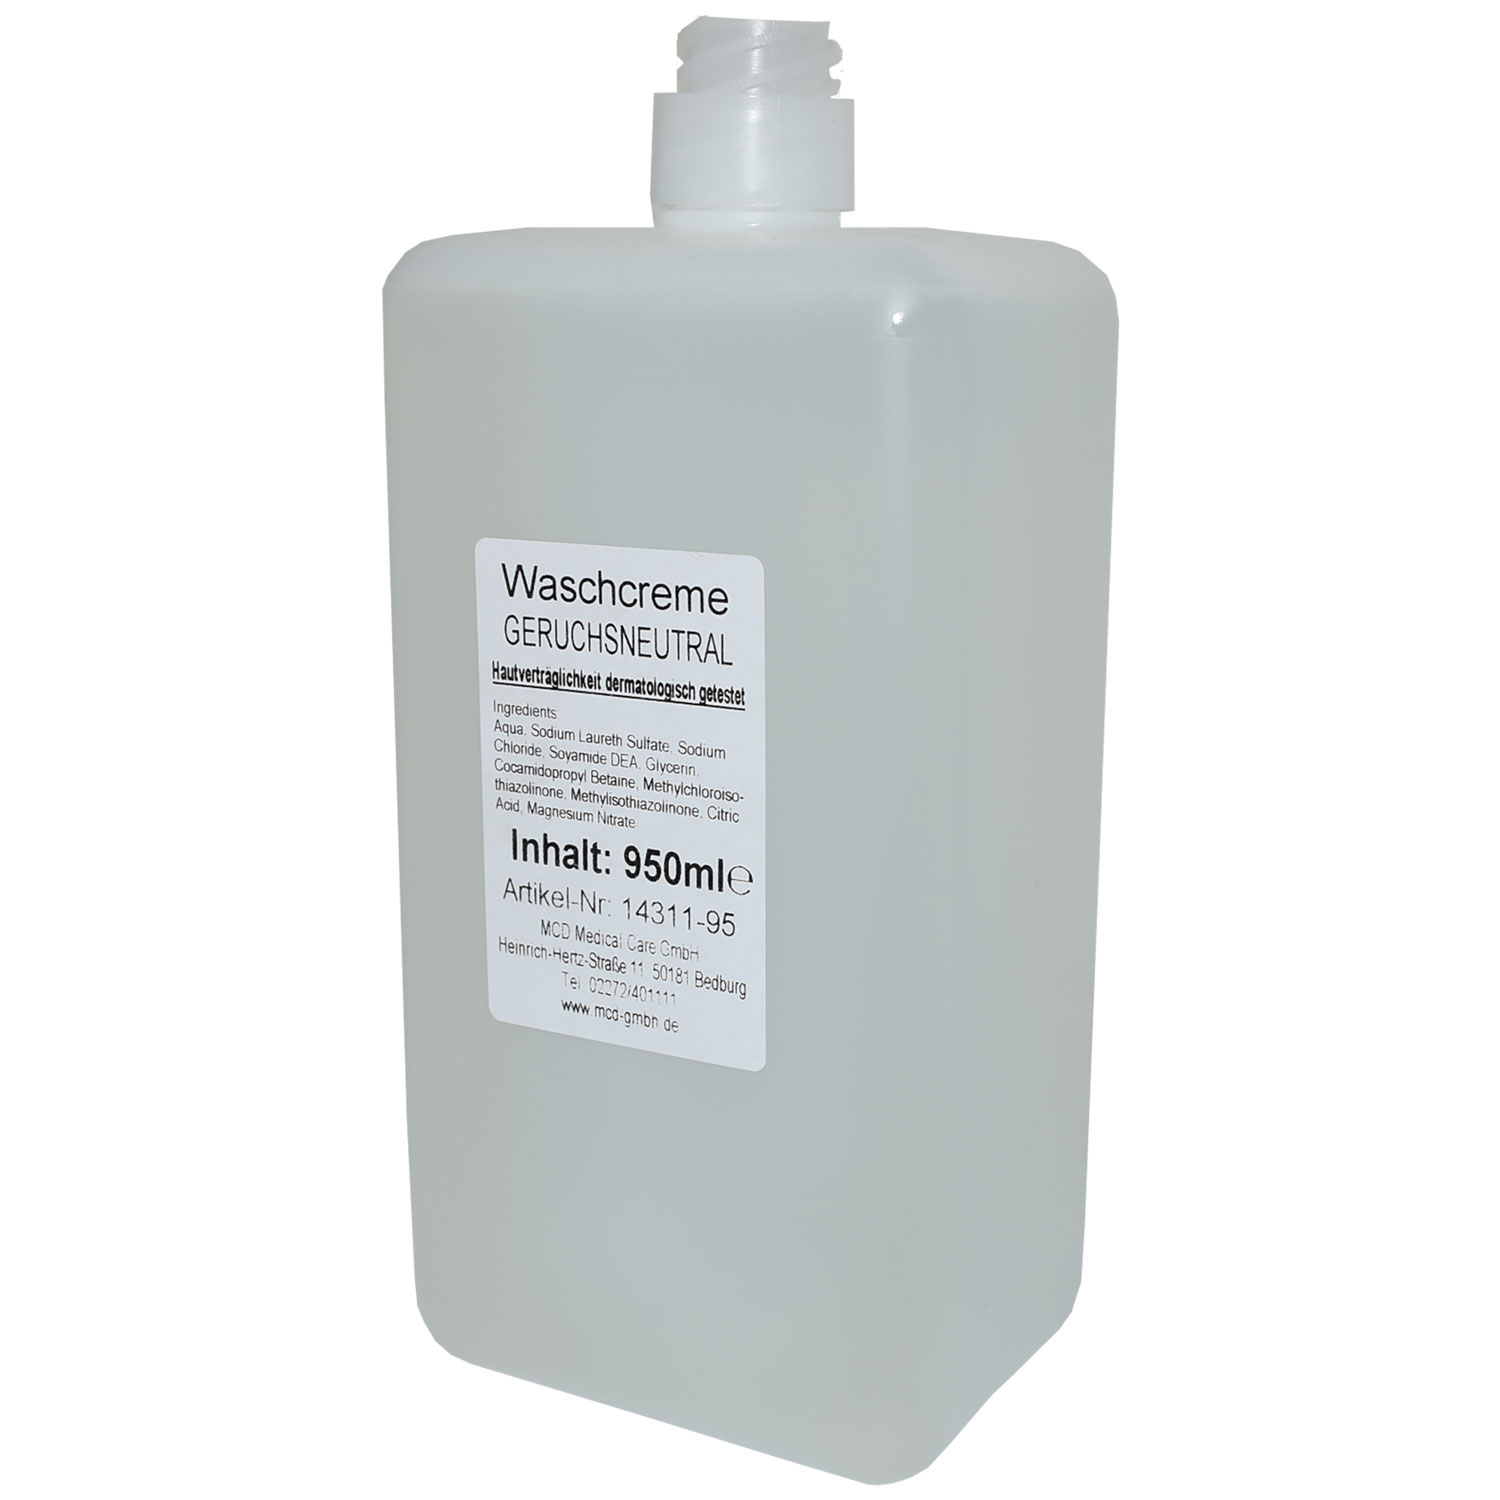 NITRAS® Medical Waschcreme, farblos, klar, 950 ml